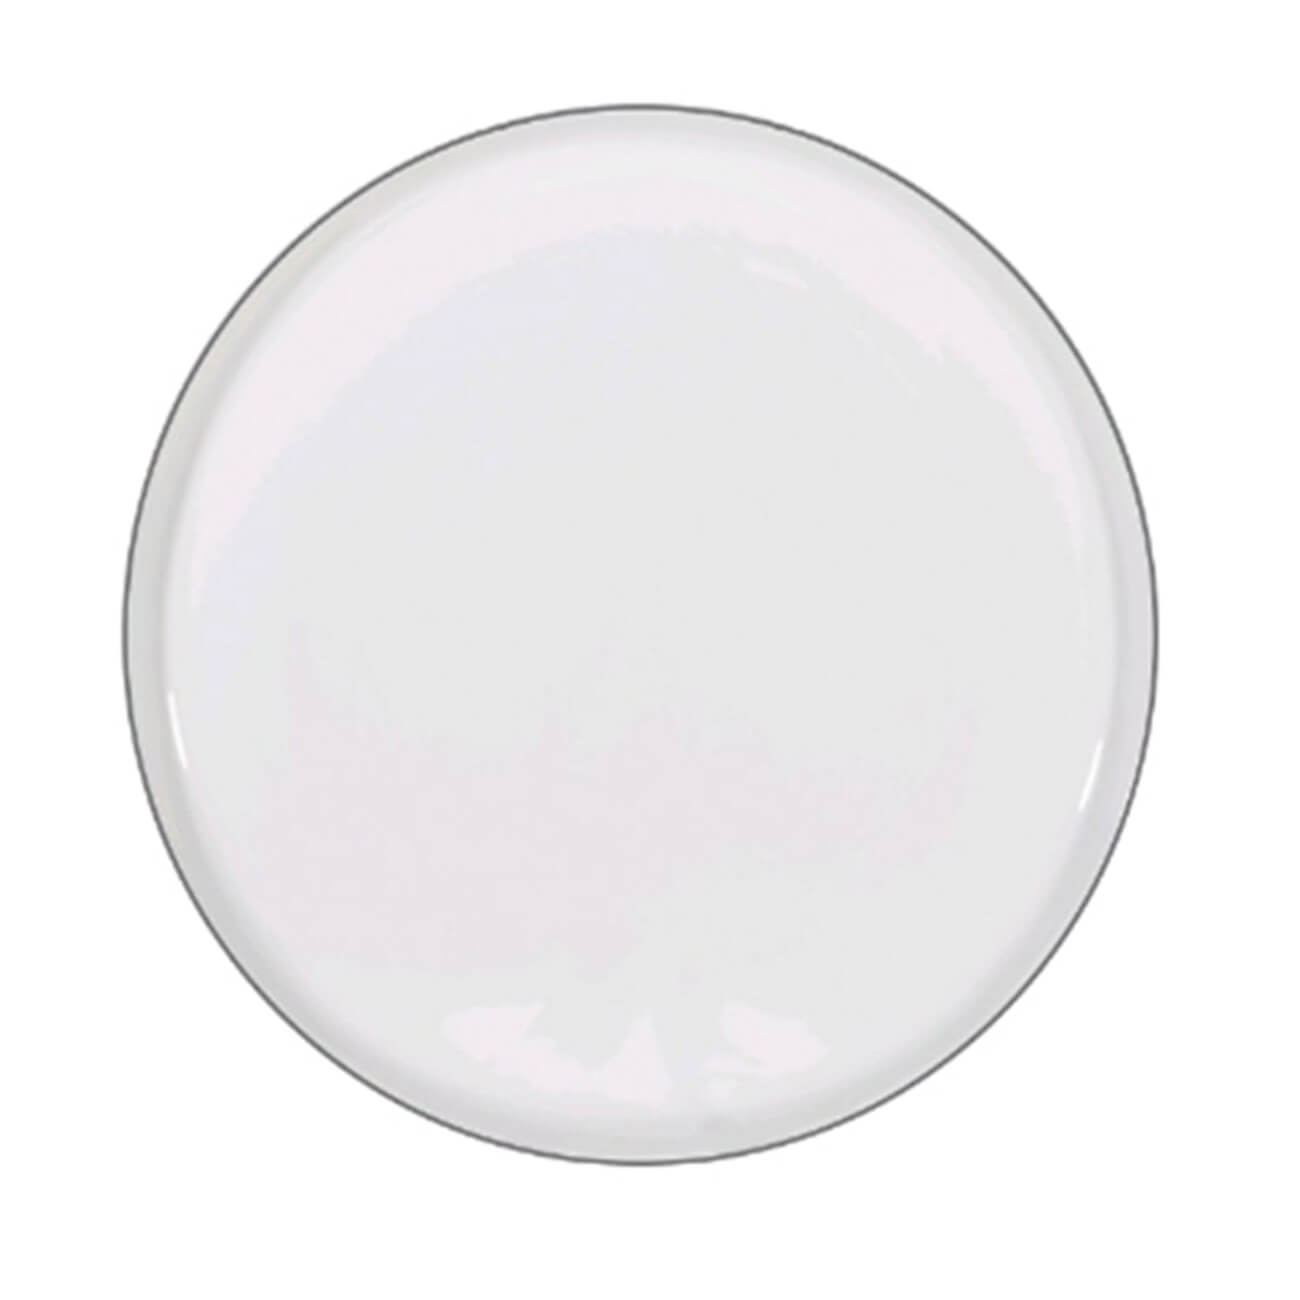 Тарелка десертная, 20 см, 2 шт, фарфор F, белая, Ideal silver ложка десертная из нержавеющей стали magistro h 14 5 см цвет серебряный